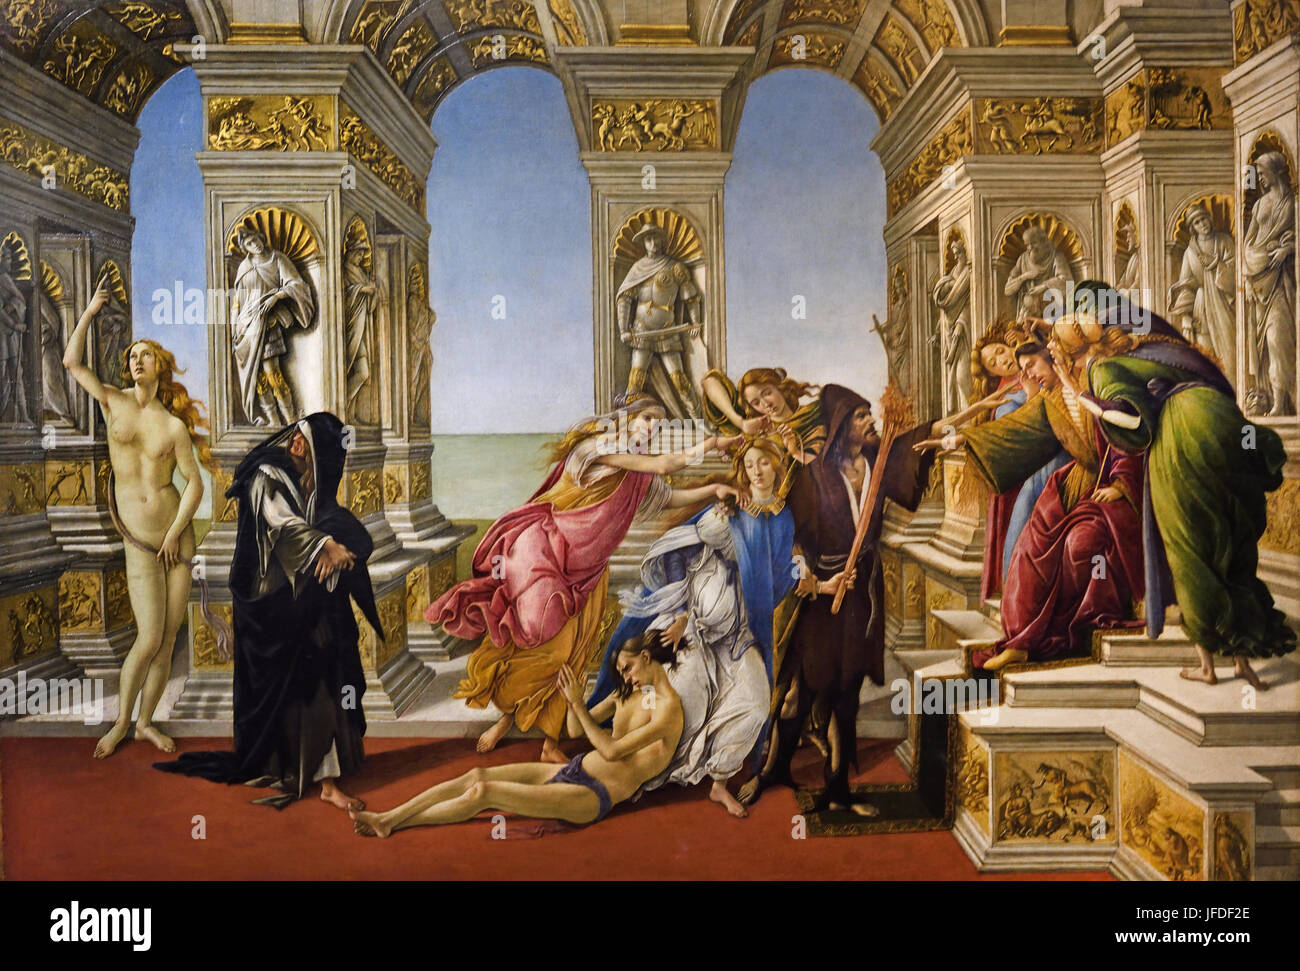 La calomnie d'Apelle 1495 Sandro Botticelli ( Alessandro di Mariano Filipepi ) Florence 1445-1510 peintre italien du début de la renaissance de l'école florentine. (Cette peinture Botticelli se sur la description d'une peinture par Apelle, un peintre grec de la période hellénistique. Apelle Banque D'Images